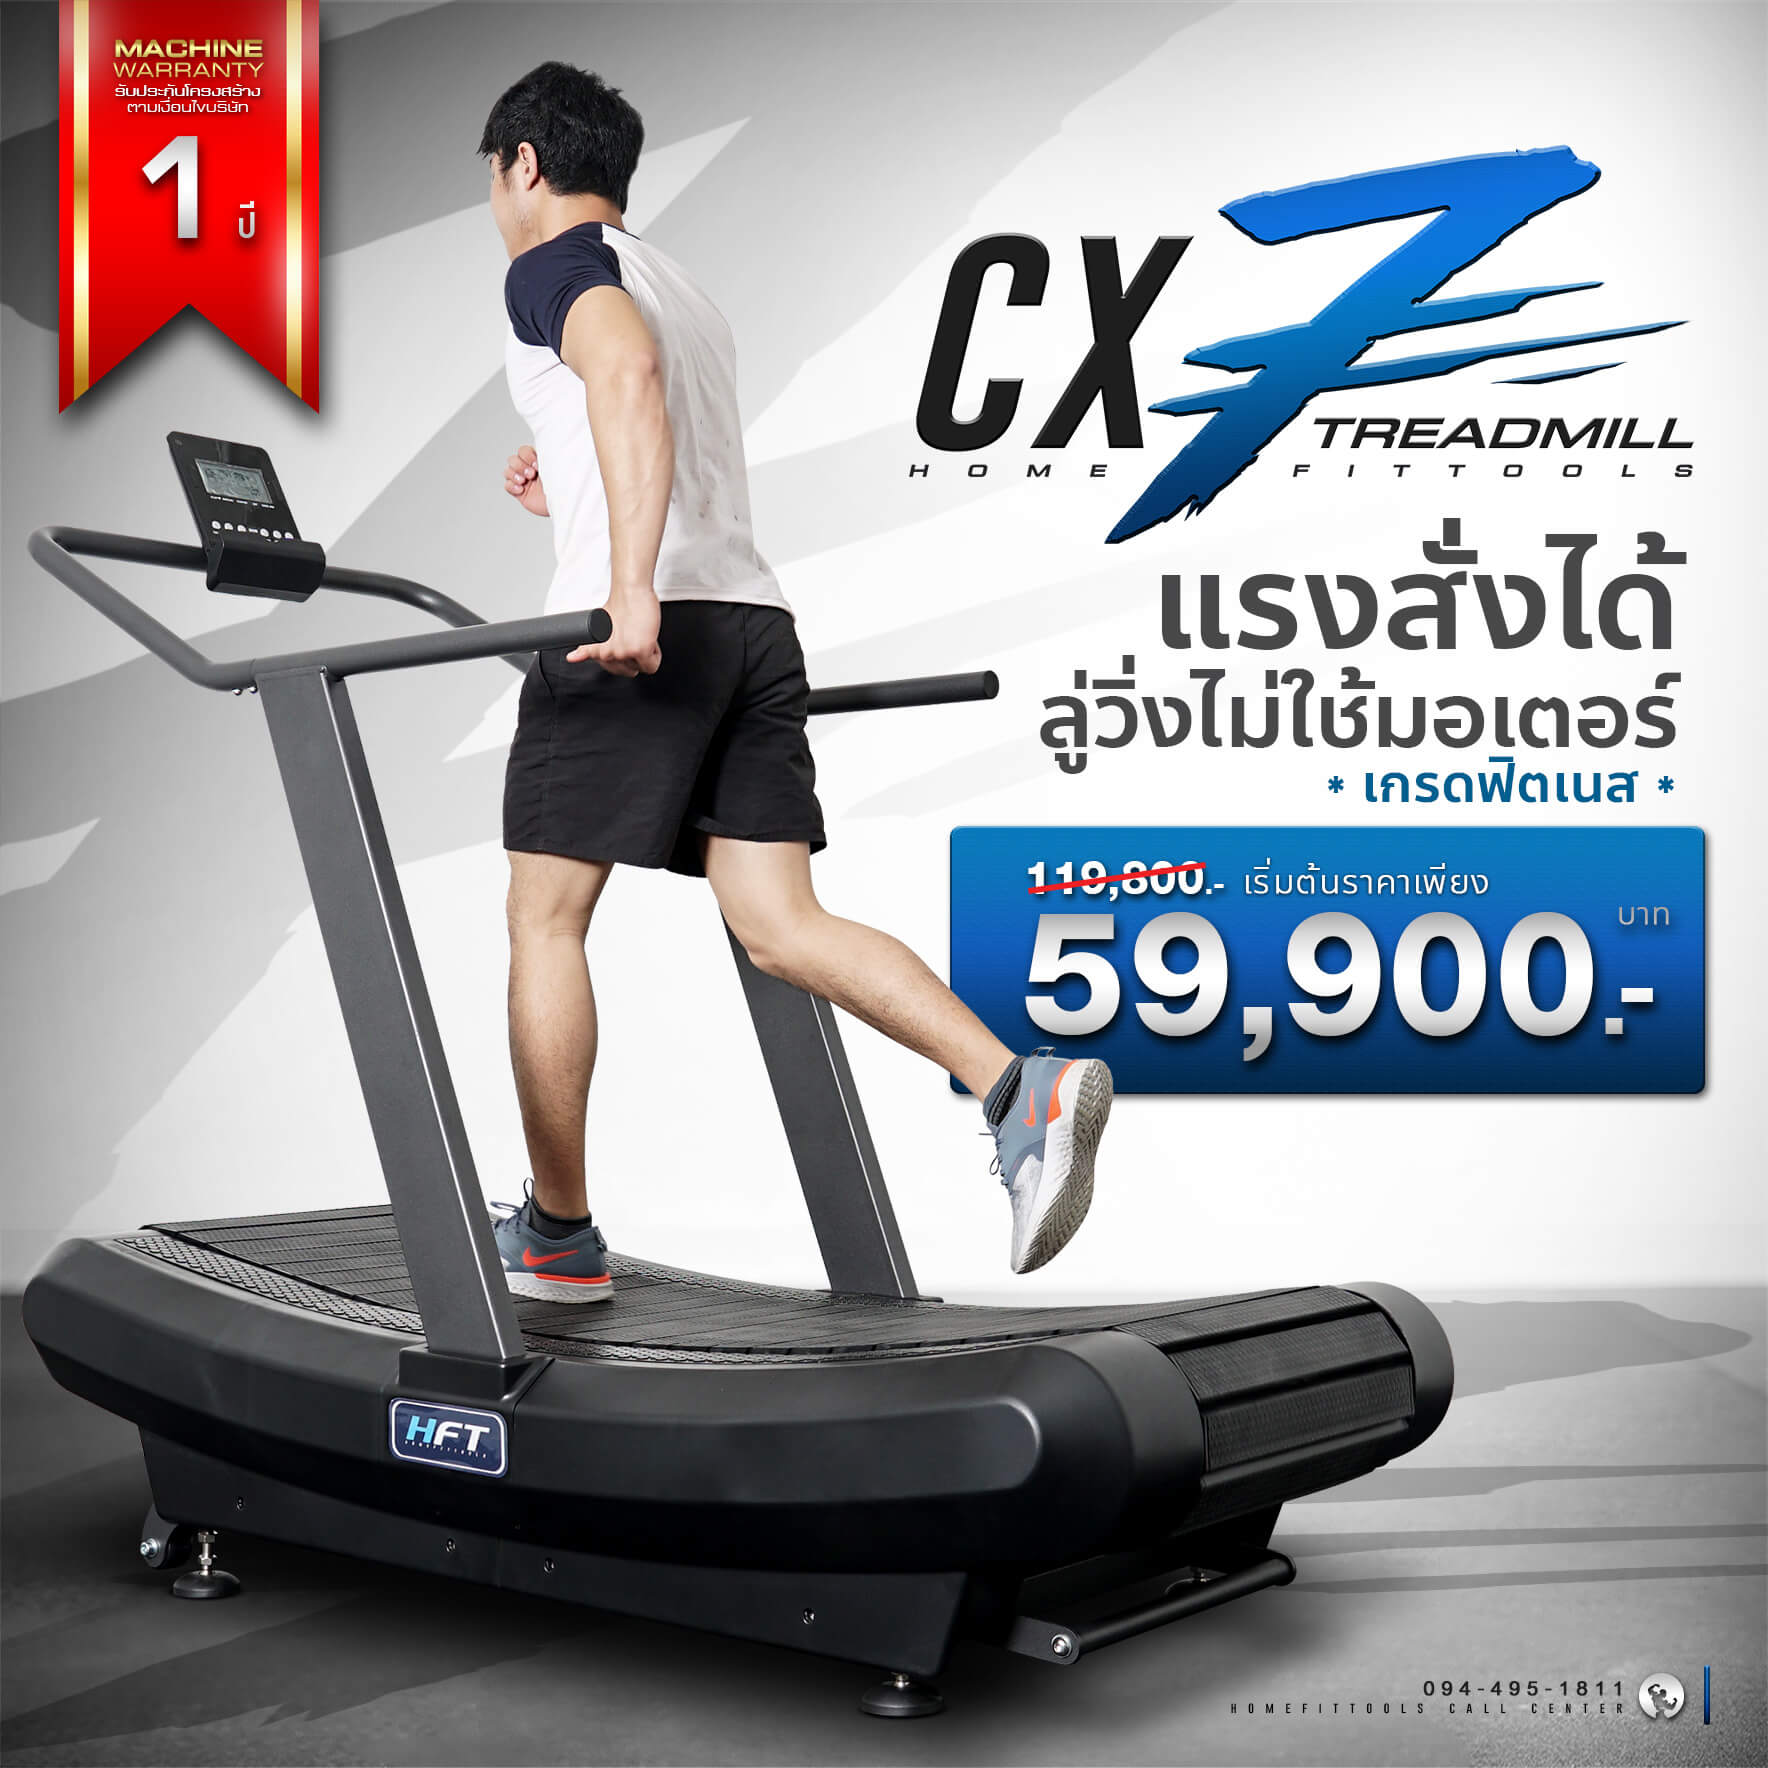 ลู่วิ่ง  Treadmill รุ่น CX7 ลู่วิ่ง เครื่องออกกำลังกาย ลู่วิ่งออกกำลังกาย ลู่วิ่งราคาถูก อุปกรณ์ฟิตเนส Homefittools